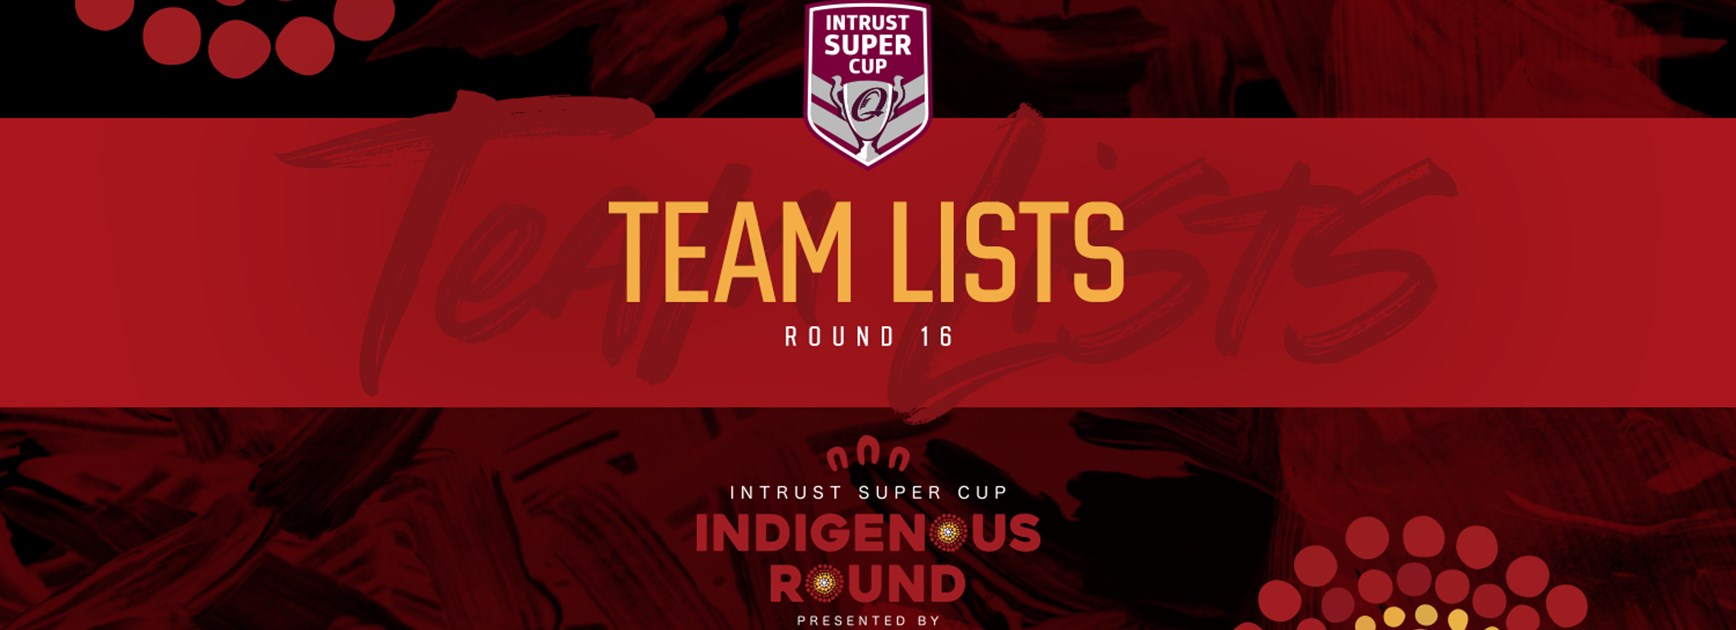 Intrust Super Cup Round 16 teams